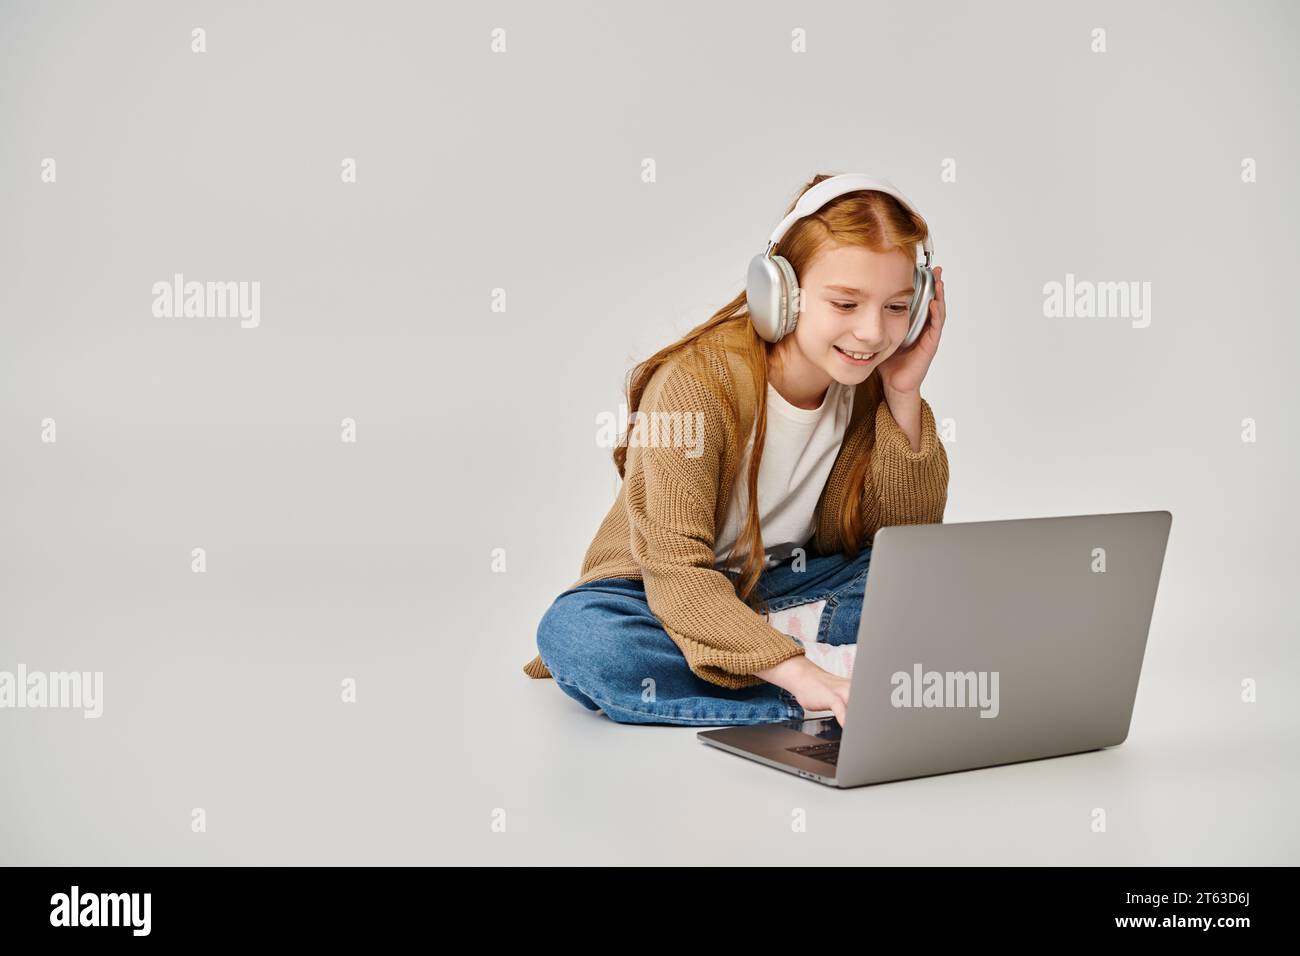 jolie petite fille joyeuse en tenue tendance d'hiver sur le sol avec casque regardant ordinateur portable, mode Banque D'Images